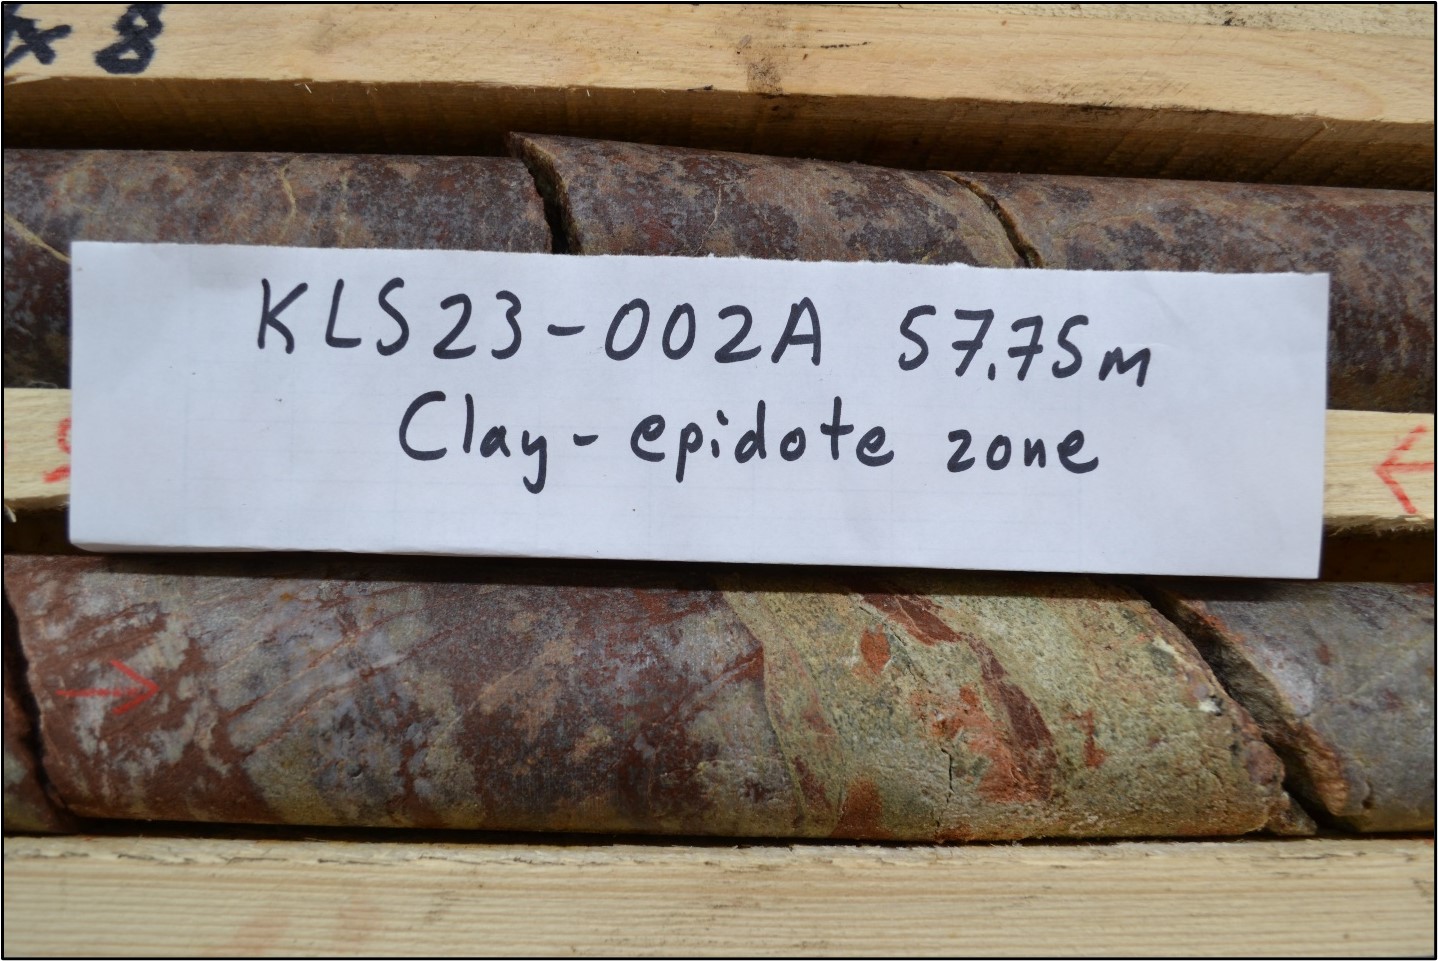 A photo of DDH KLS23-002A (57.75m depth) Clay-Epidote Zone